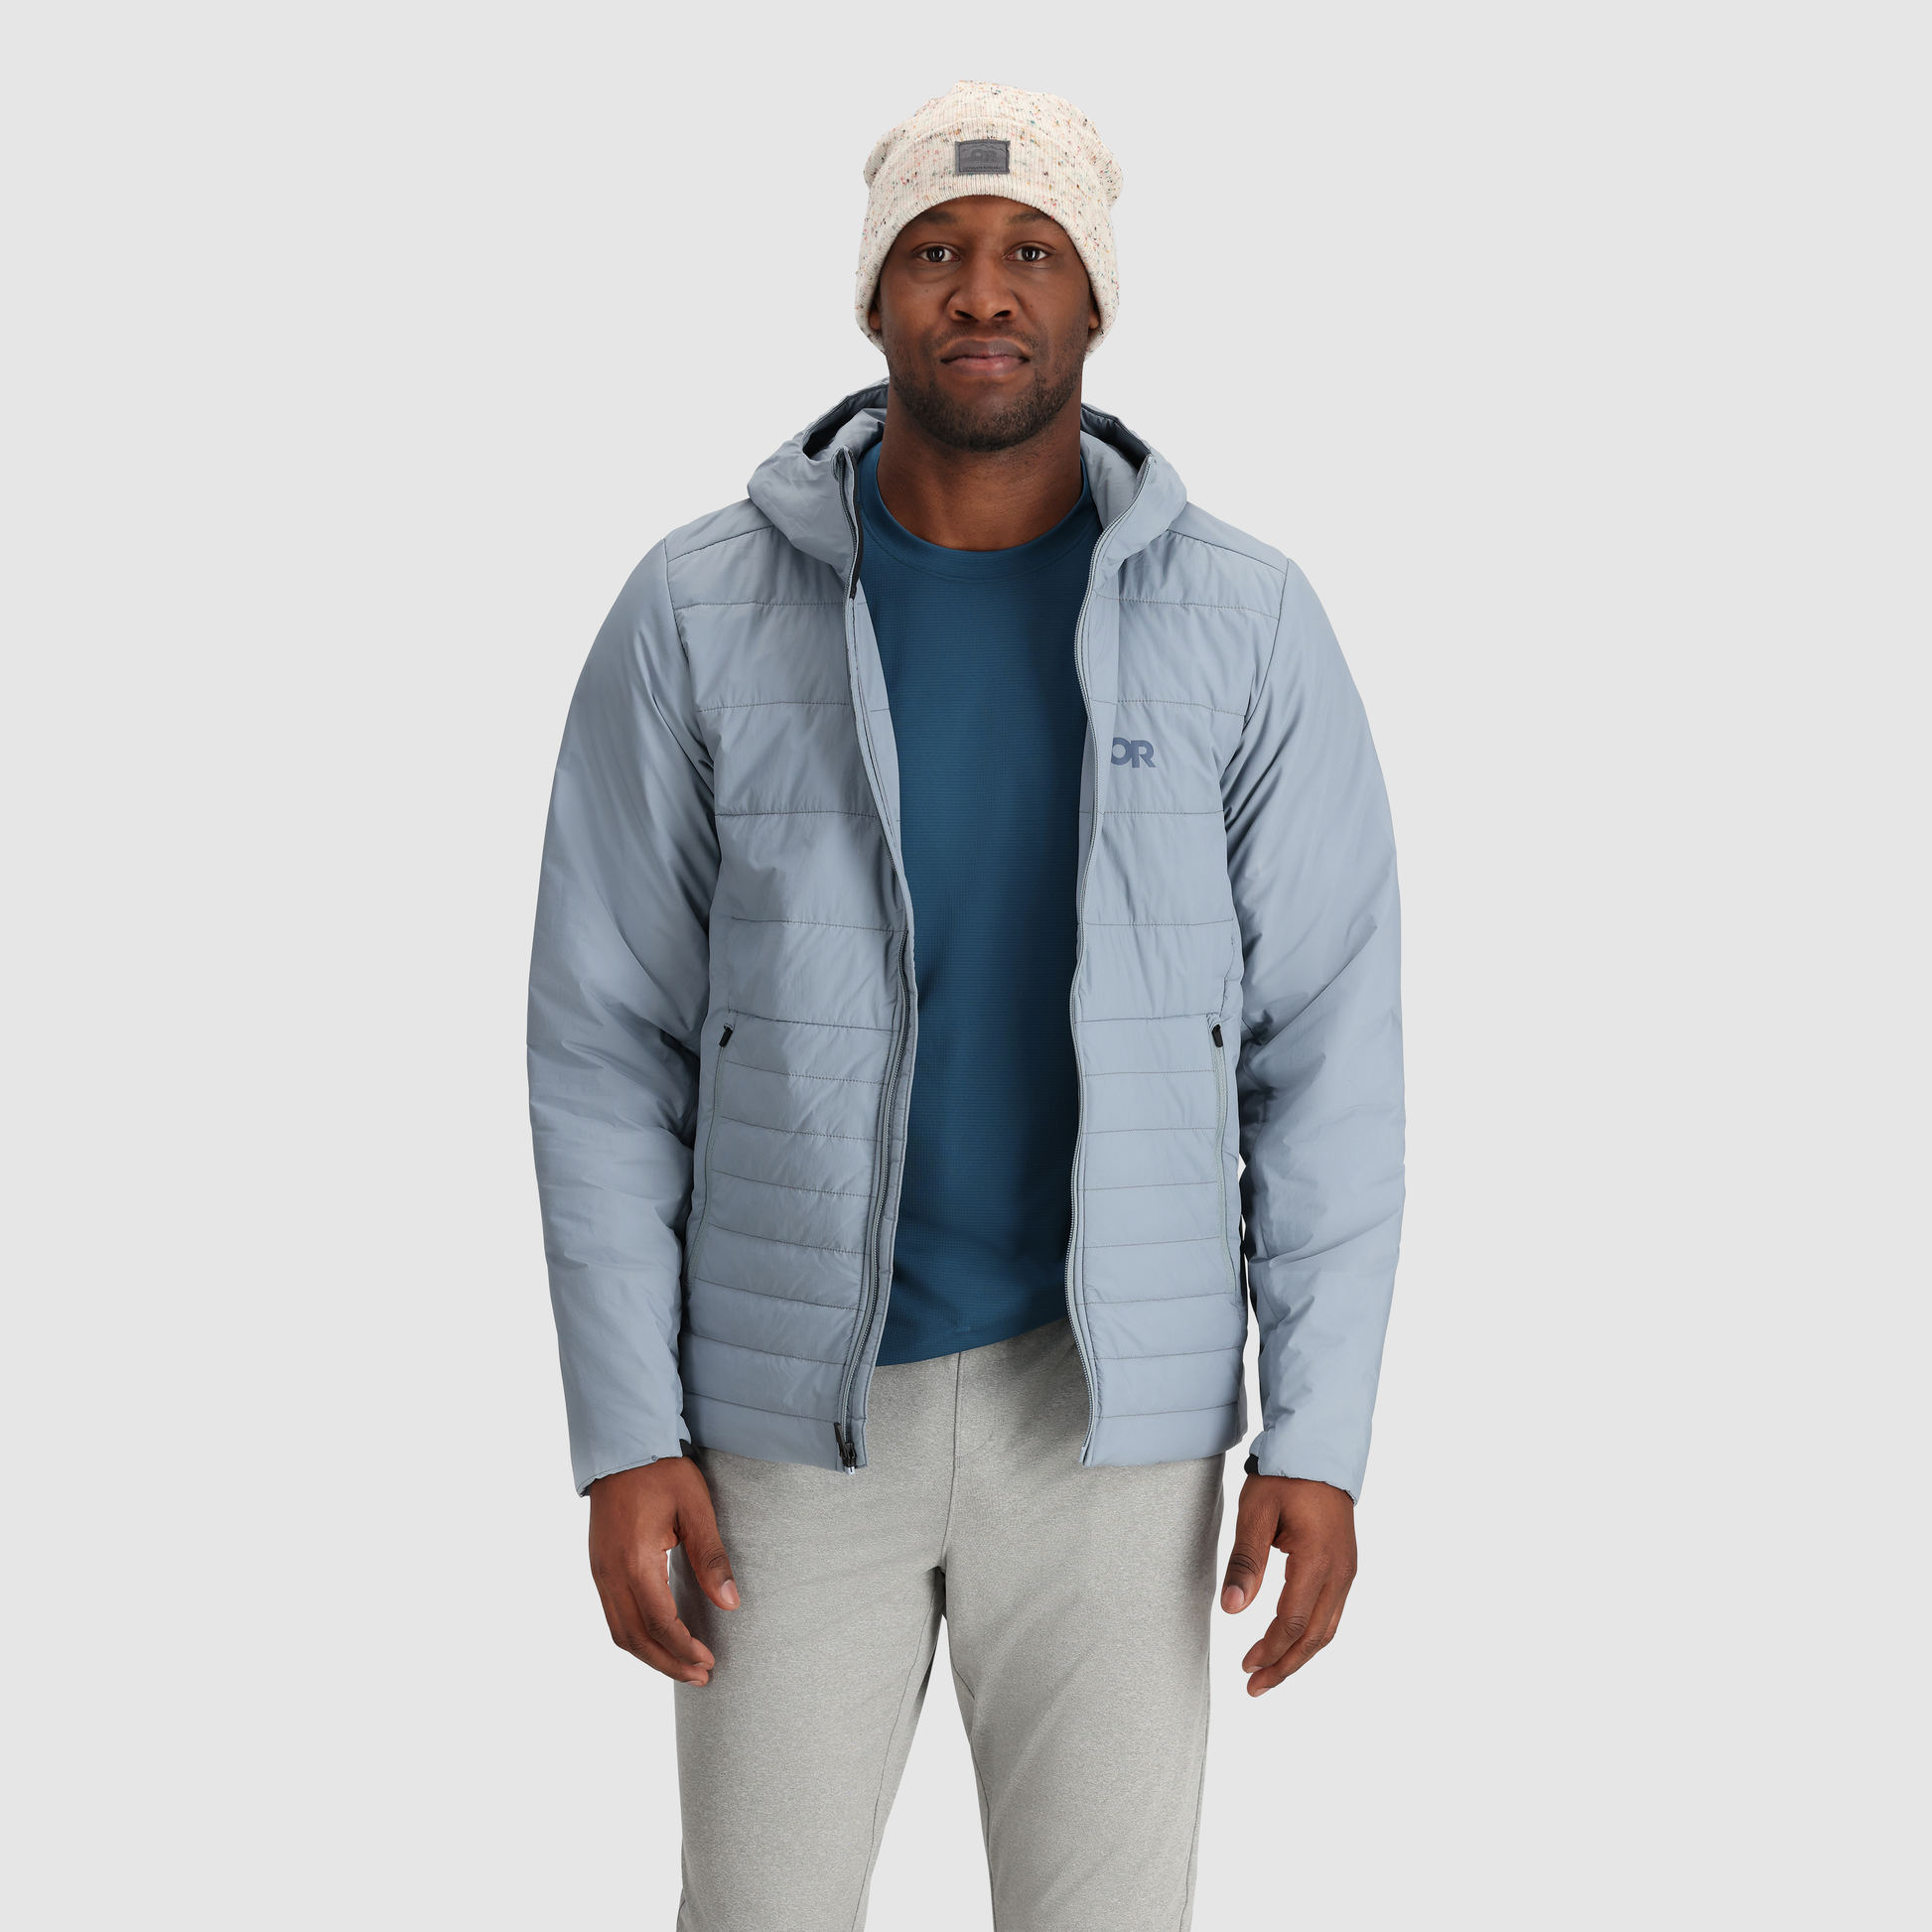 Men’s Shadow Series Waterproof Insulated Hooded Jacket